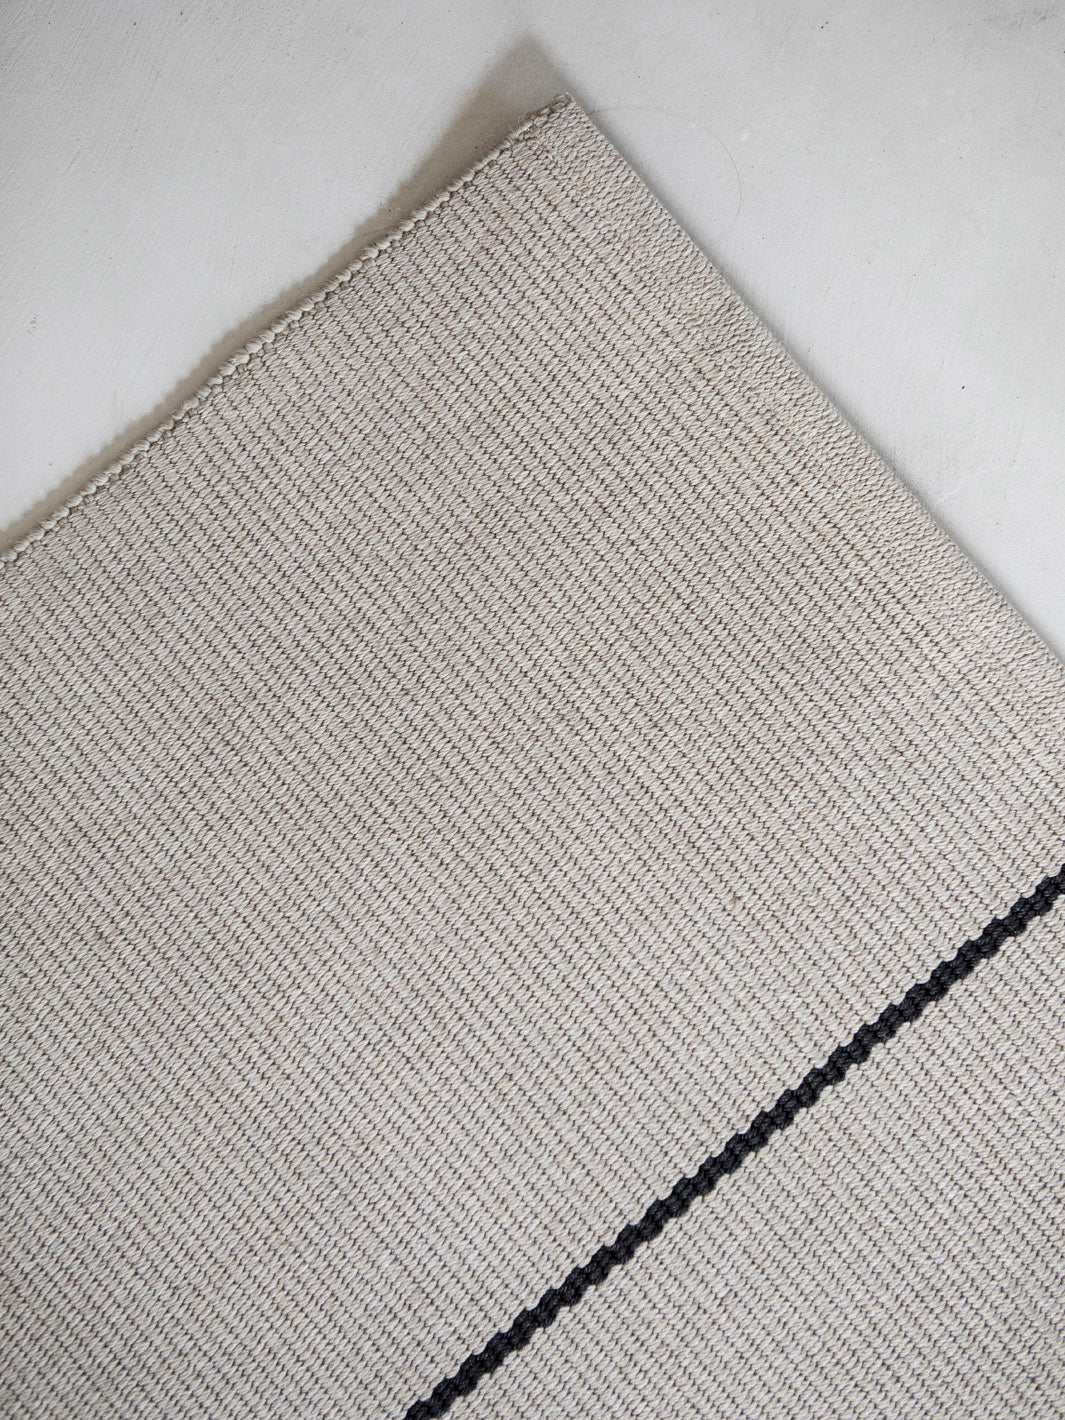 Carpet FINI Ivory / Black